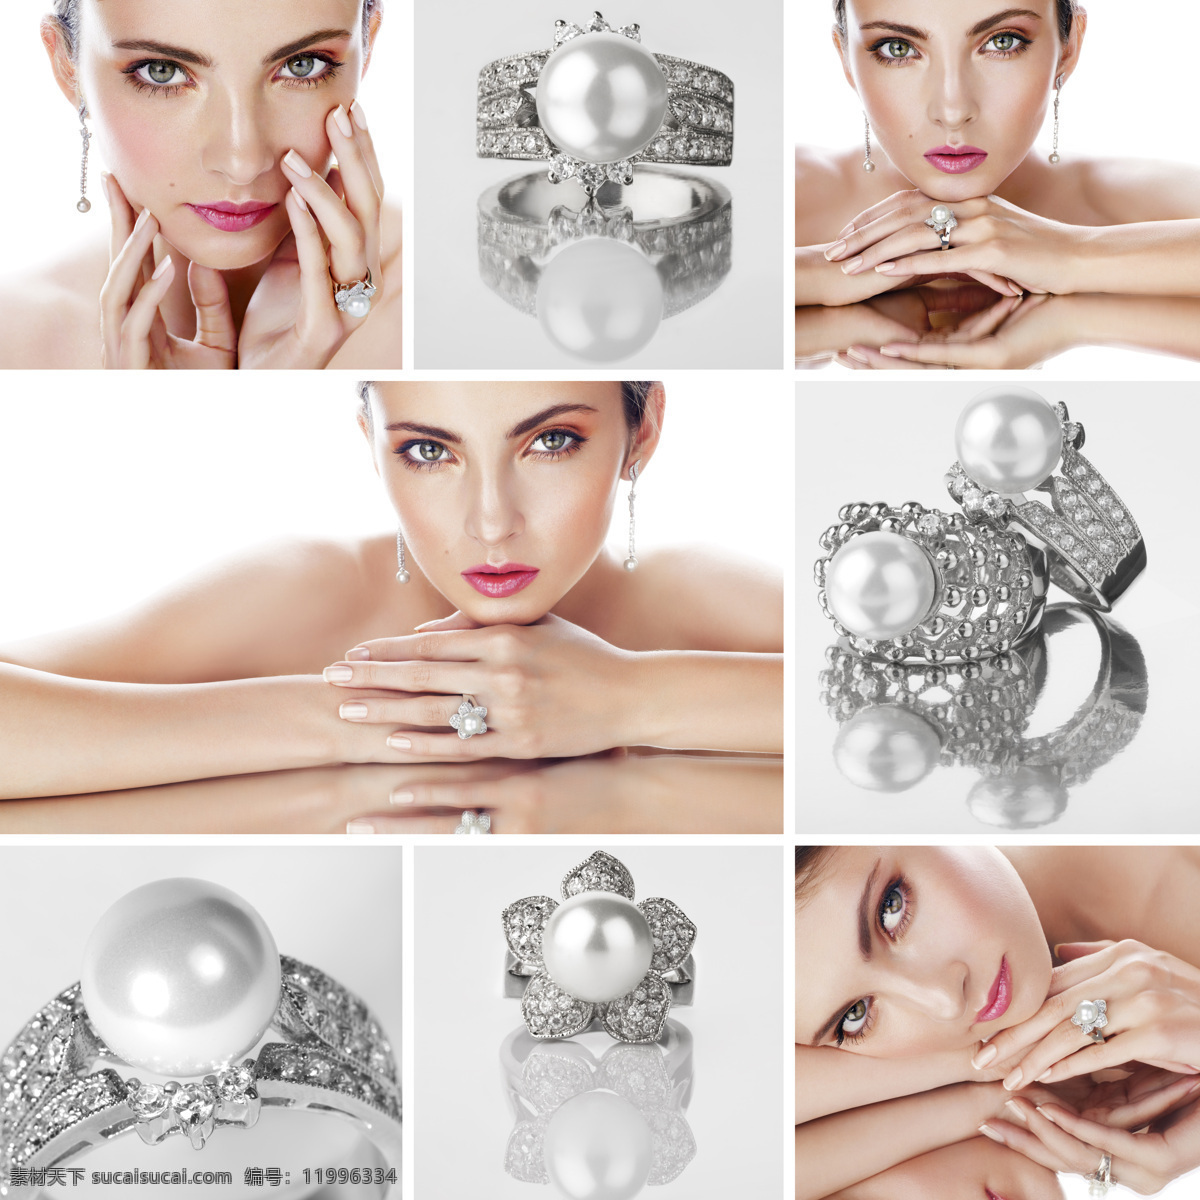 珍珠 戒指 美女图片 钻石 美女 女人 首饰 饰品 生活人物 人物图片